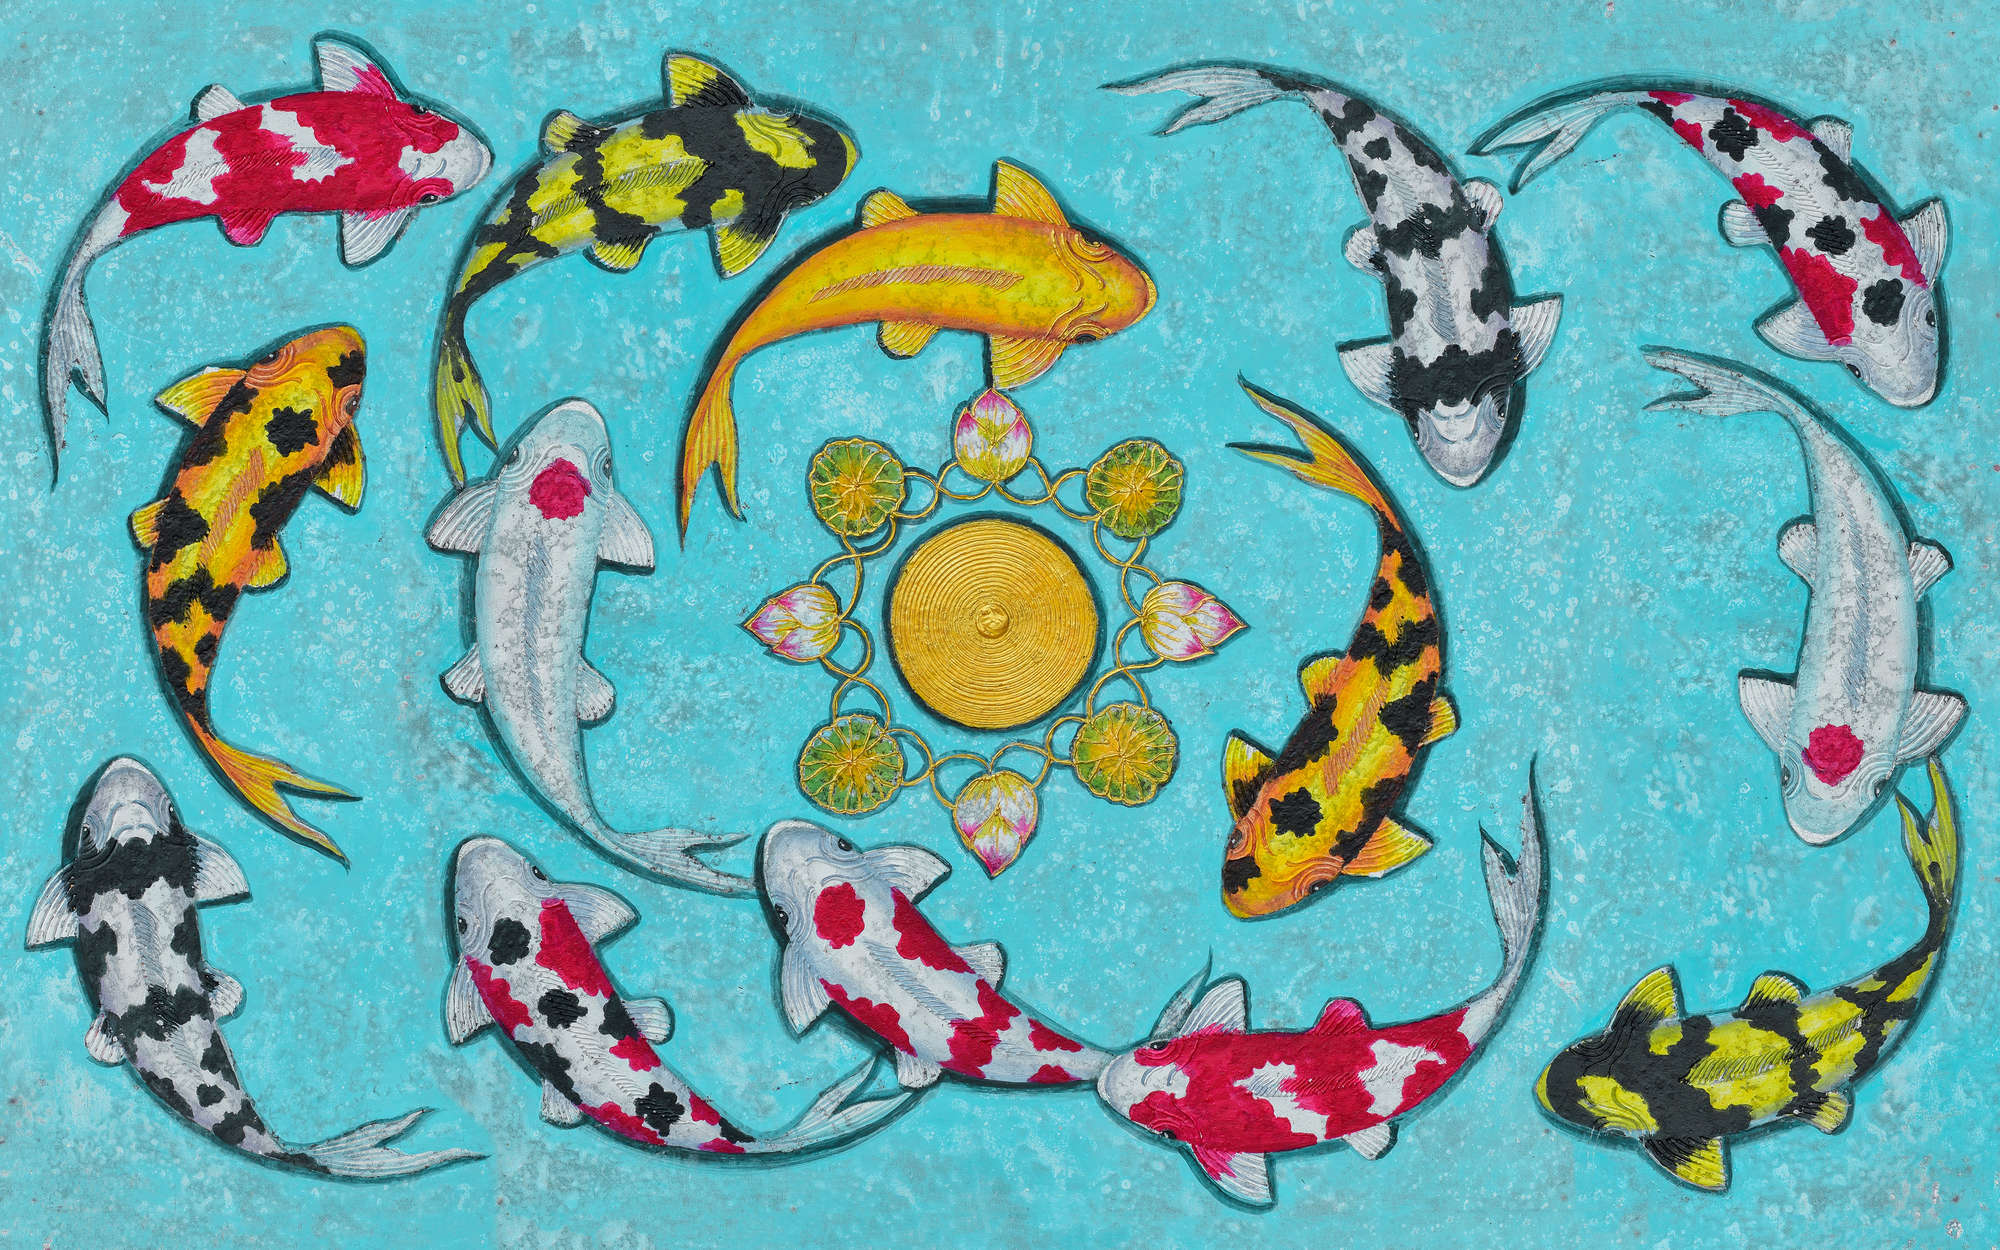             Obra de arte mural con peces - tejido no tejido liso de alta calidad
        